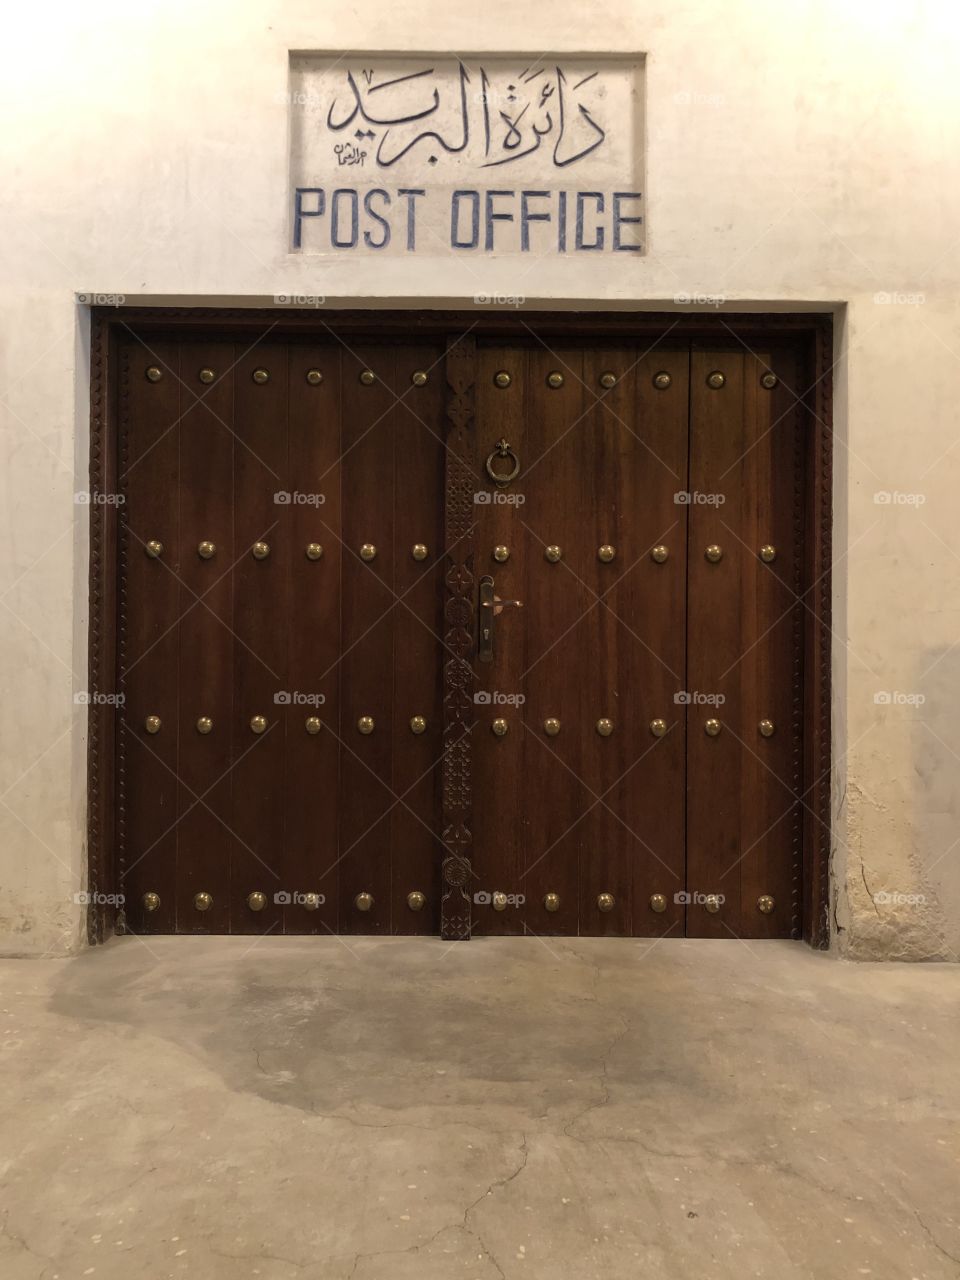 Post office front door